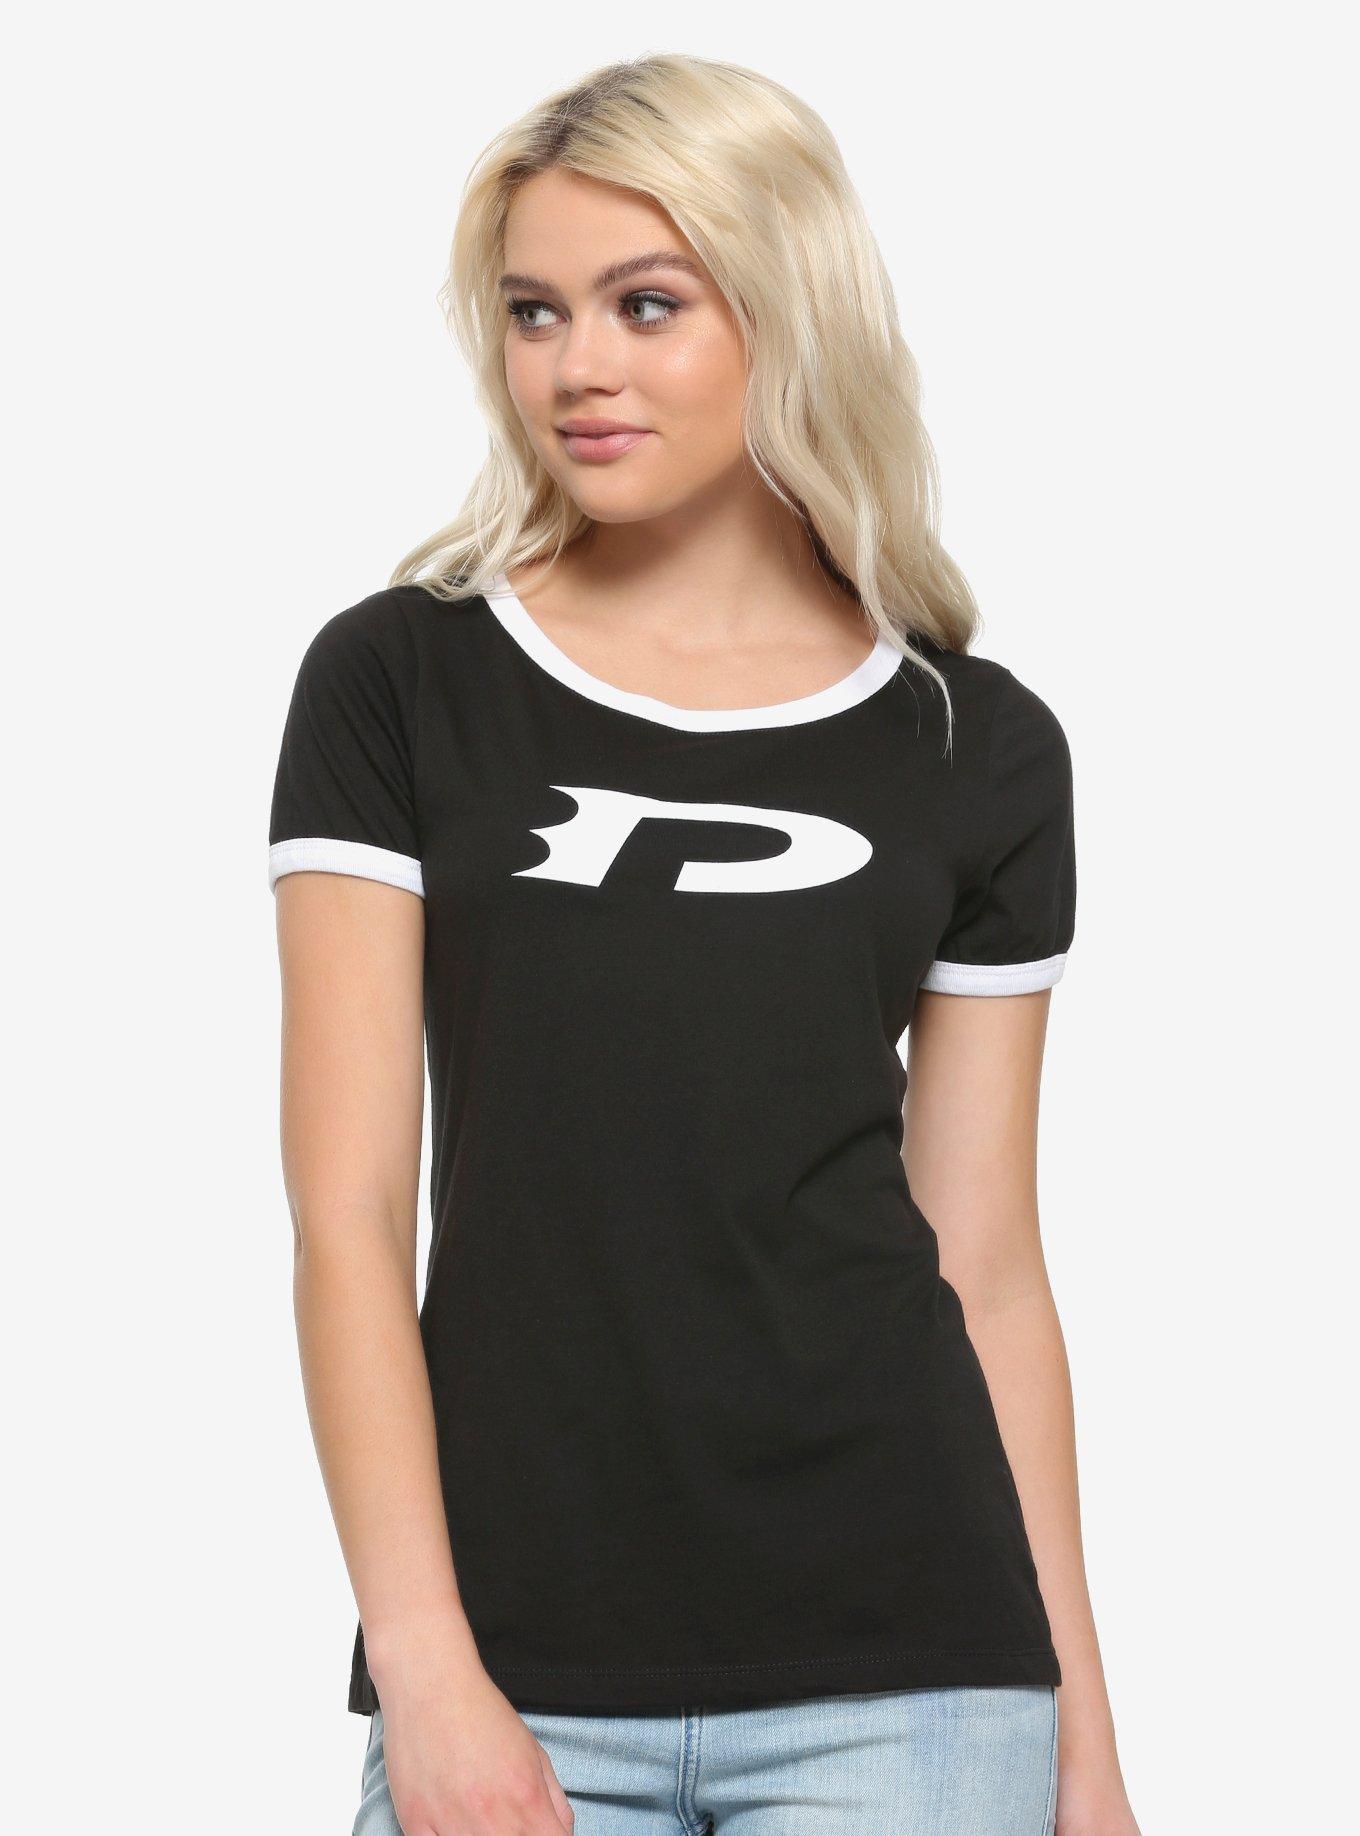 Danny Phantom Cosplay Girls Ringer T-Shirt, WHITE, hi-res